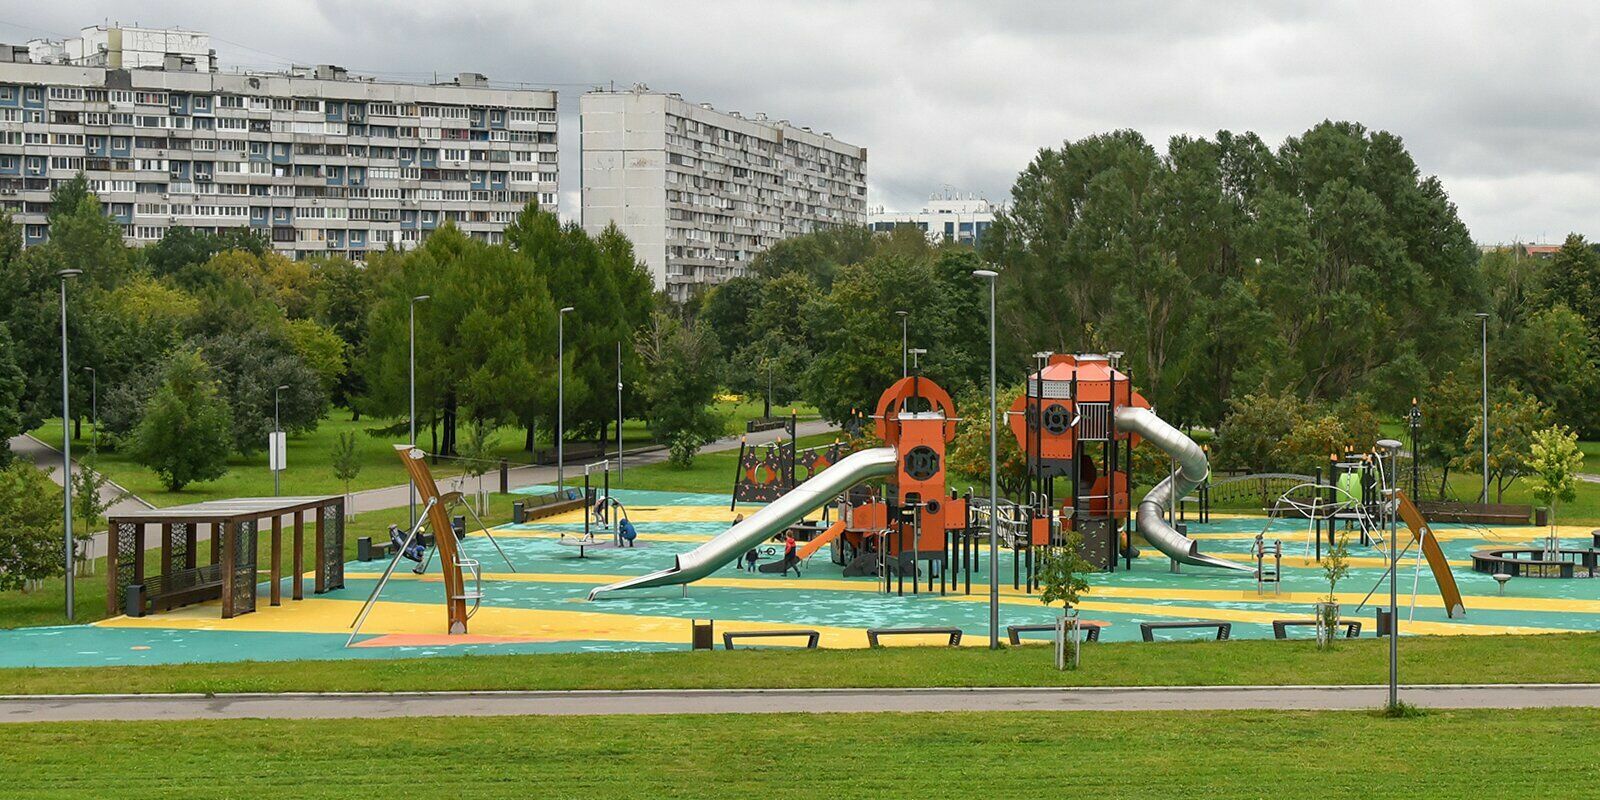 Sobyanin named Sadovniki Park after former Moscow Mayor Yuri Luzhkov